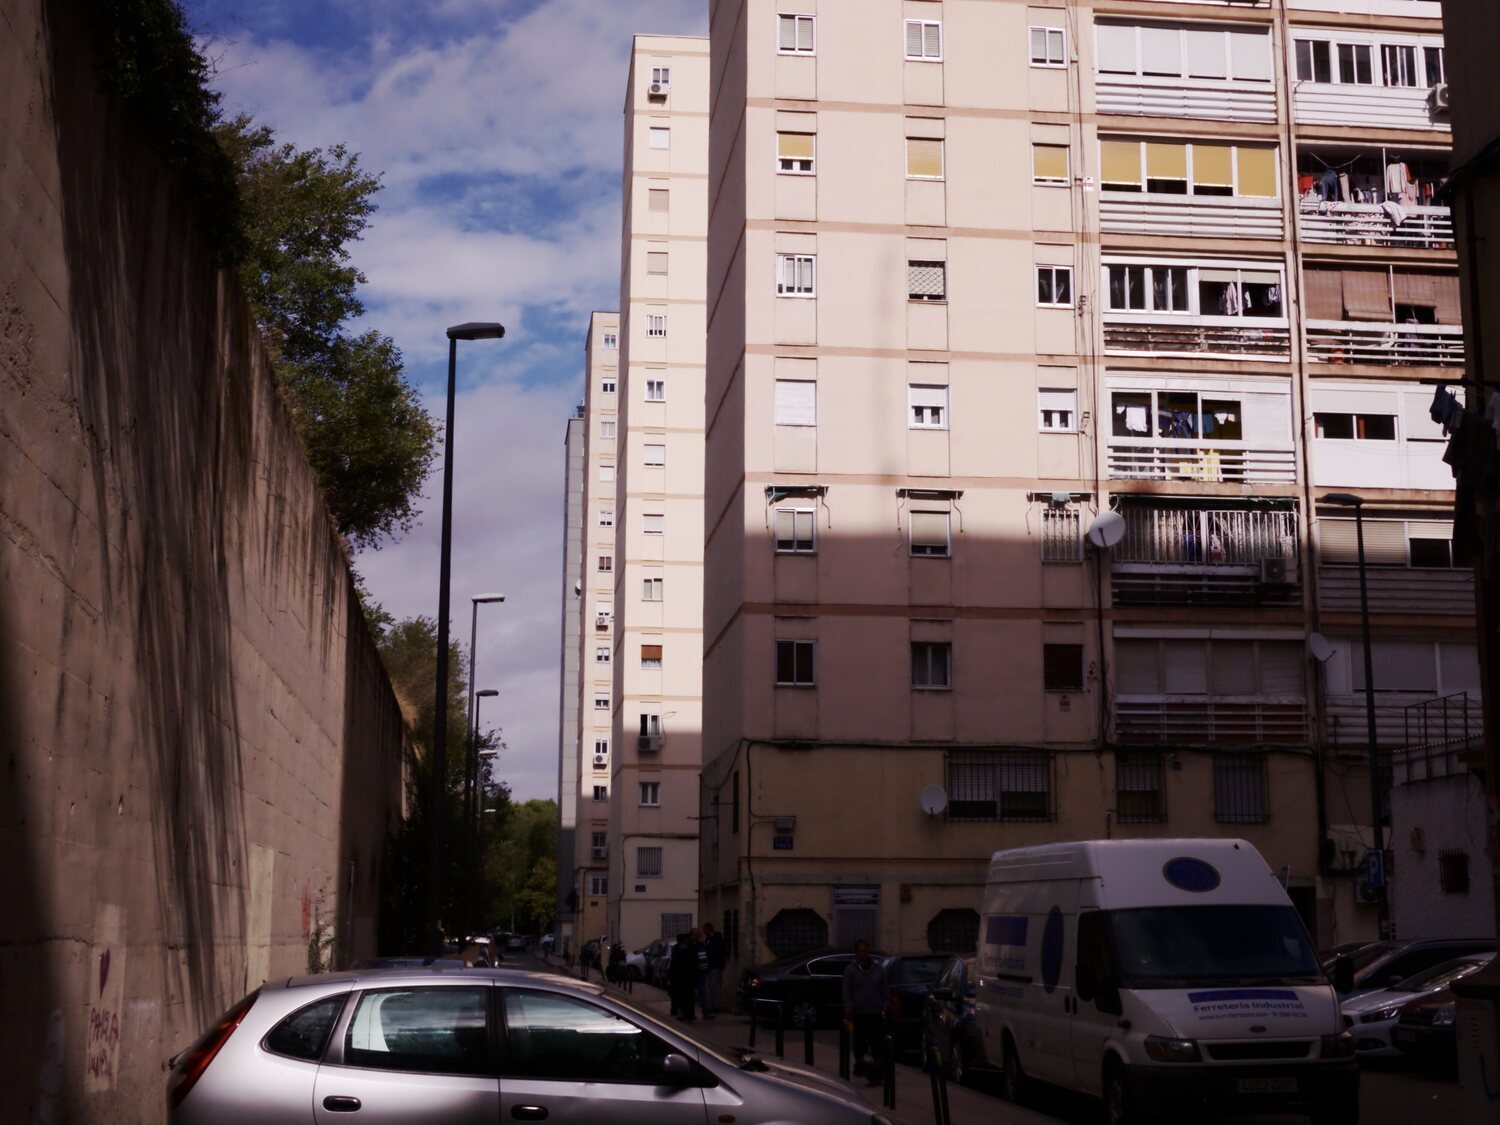 Cuáles son los barrios más ricos y pobres de Madrid